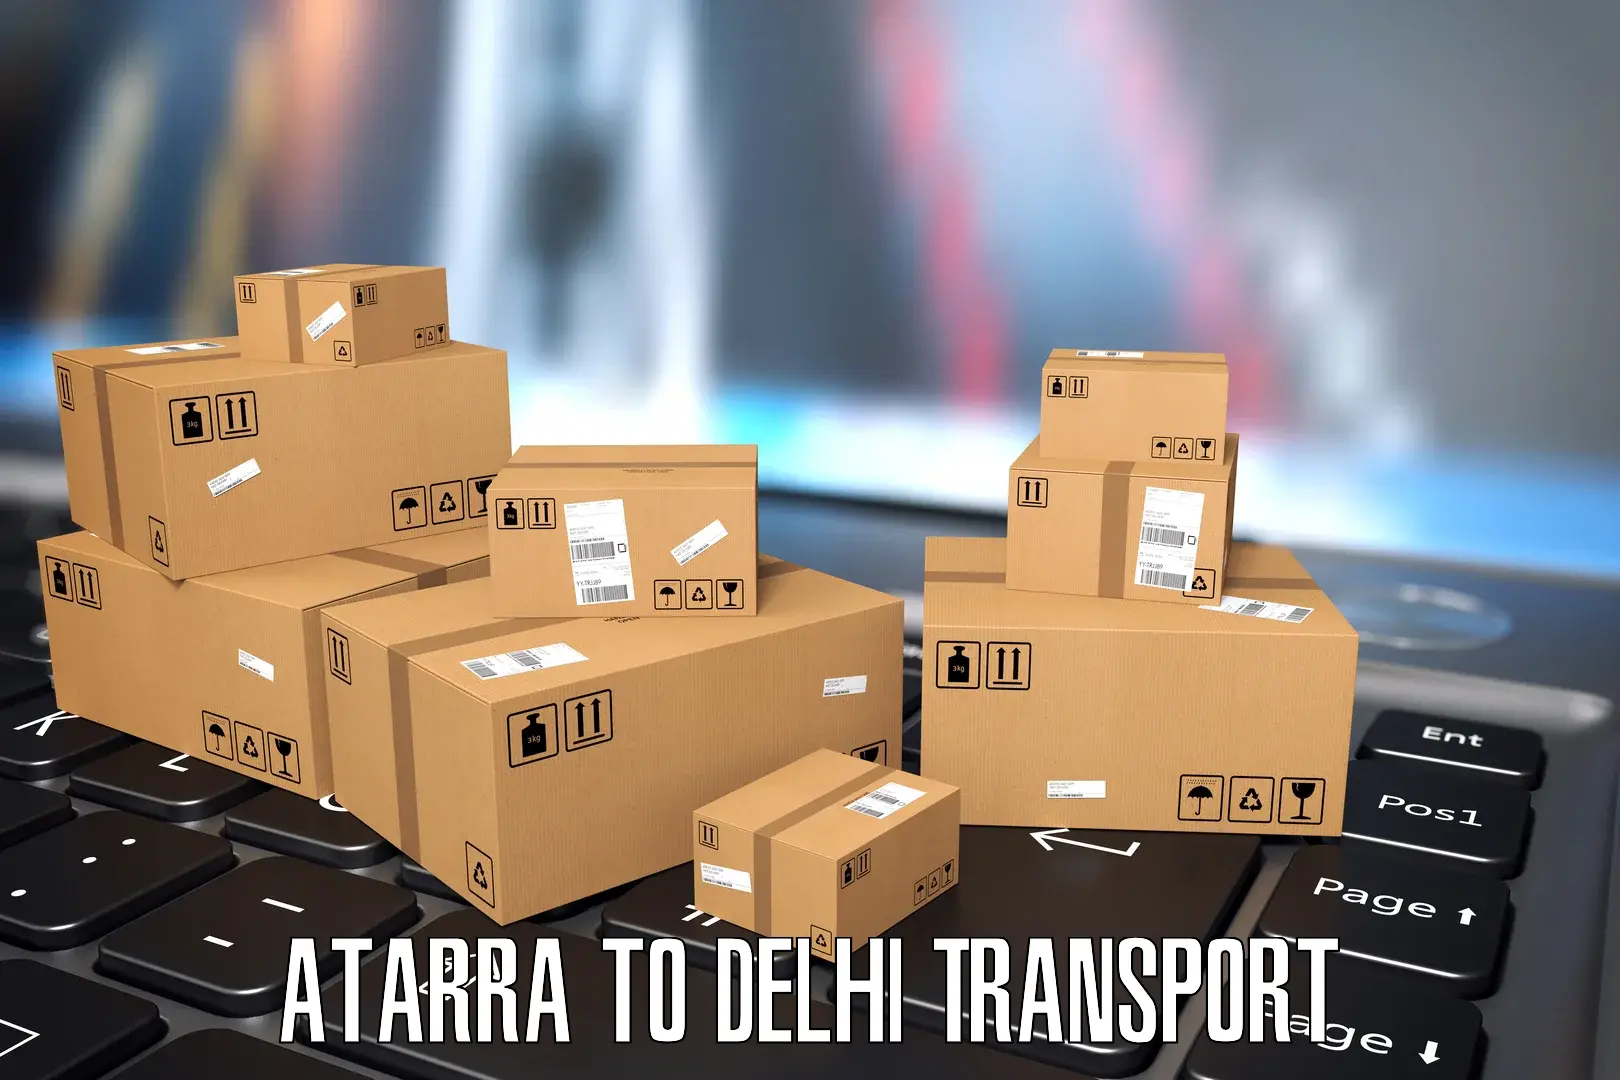 Express transport services Atarra to IIT Delhi